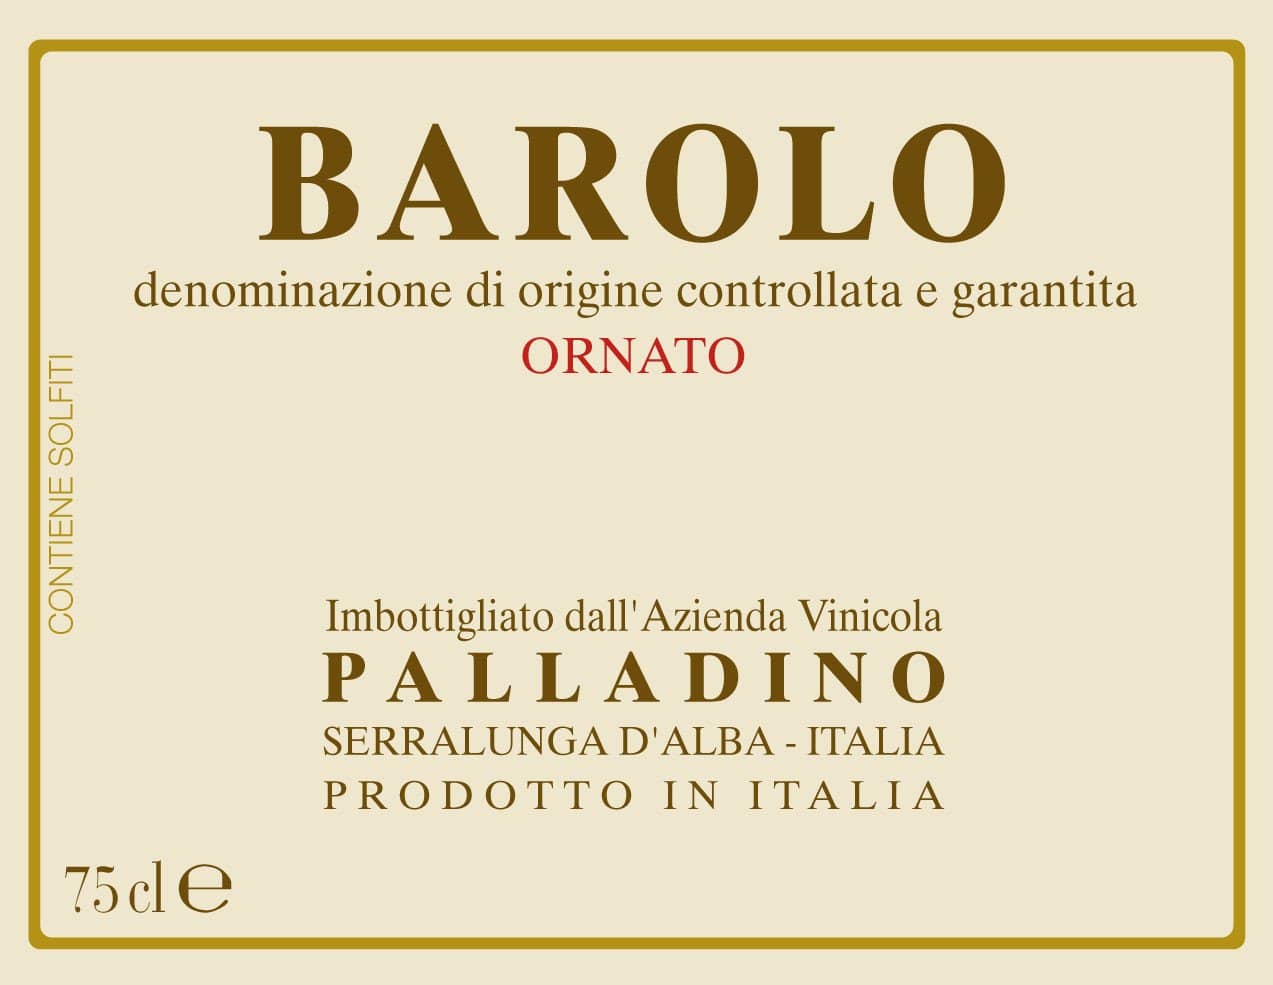 Palladino Barolo Ornato Magnum 2012